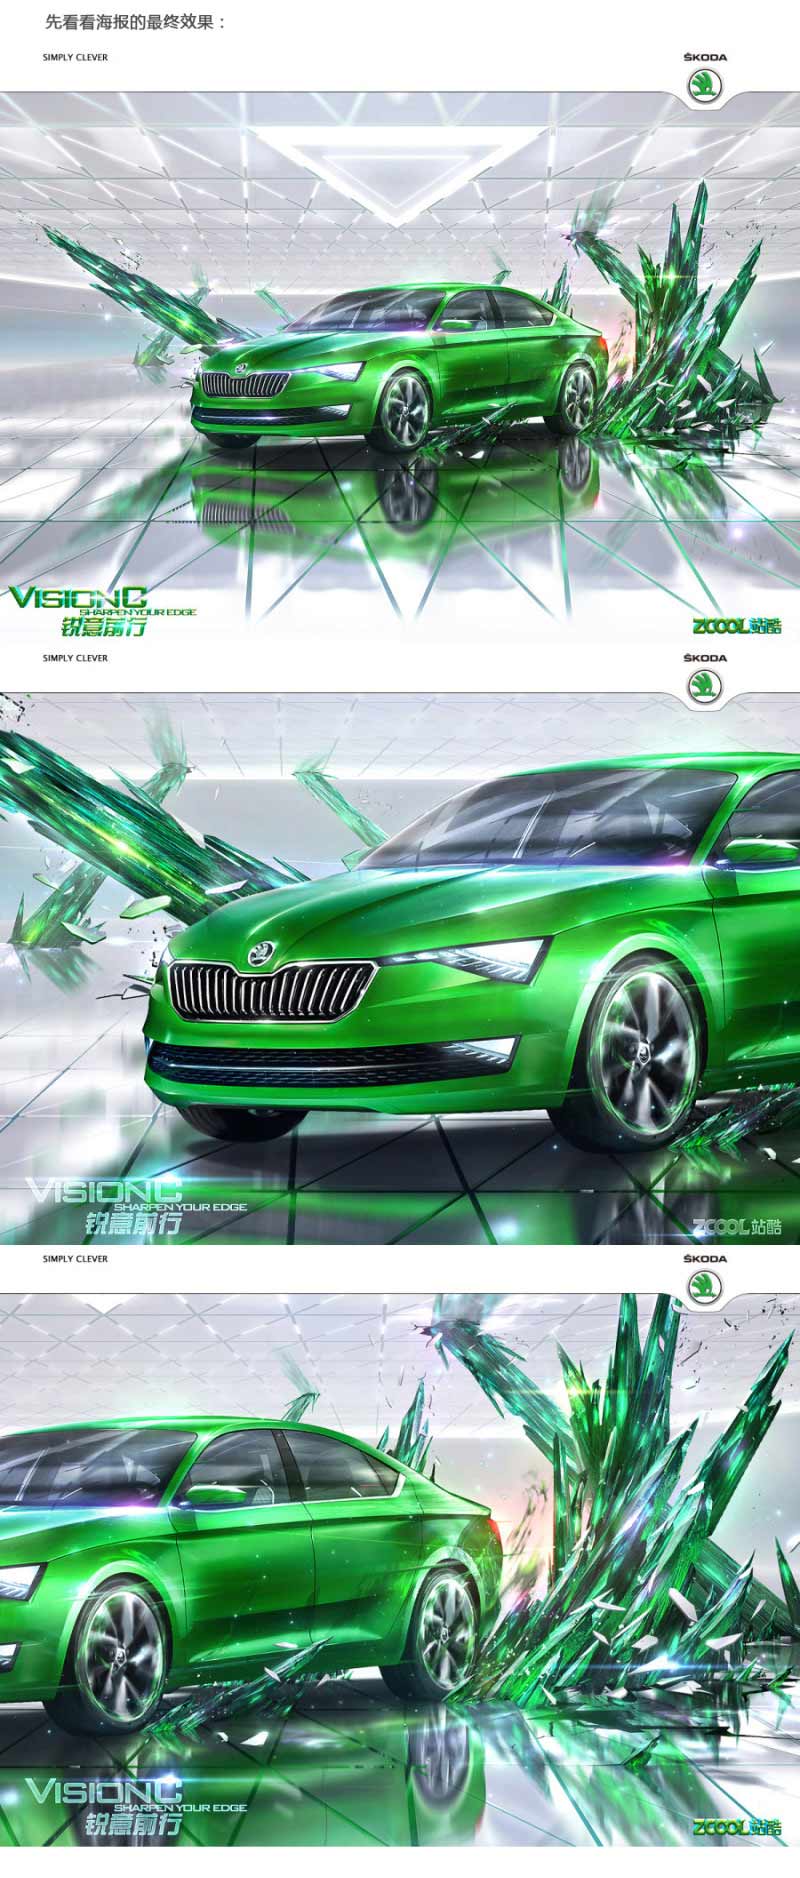 Photoshop设计创意的斯柯达汽车宣传海报教程